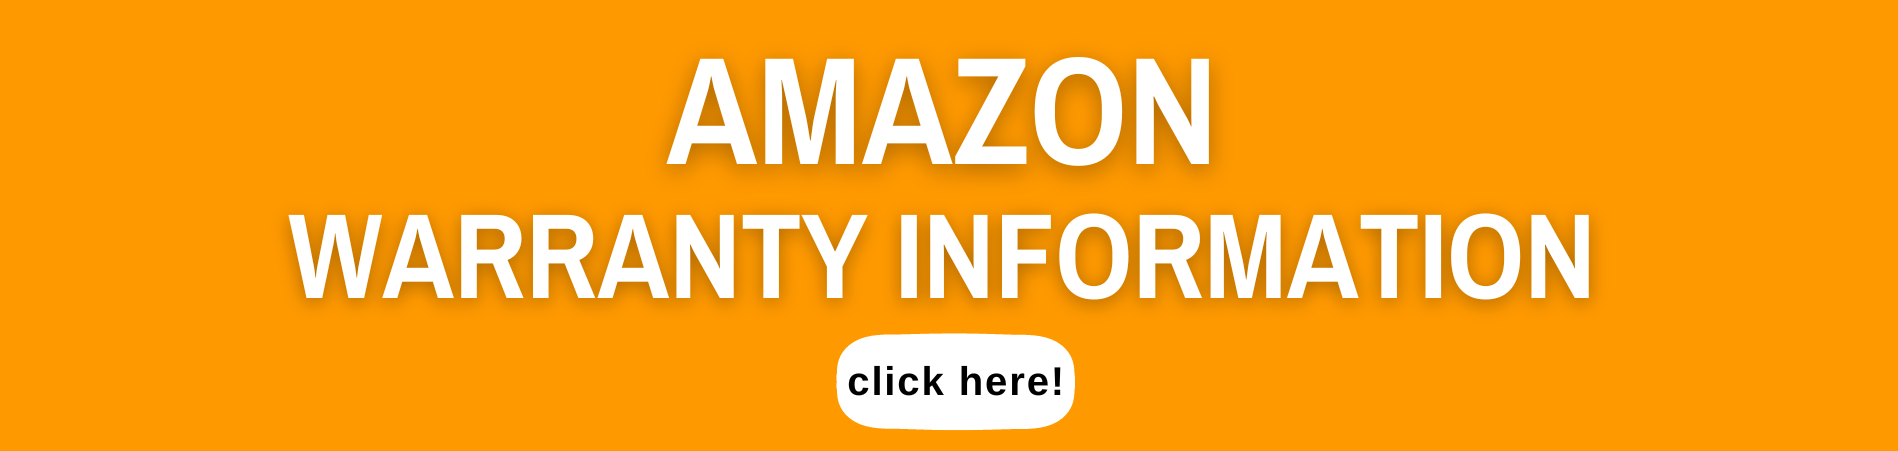 Amazon Warranty Information